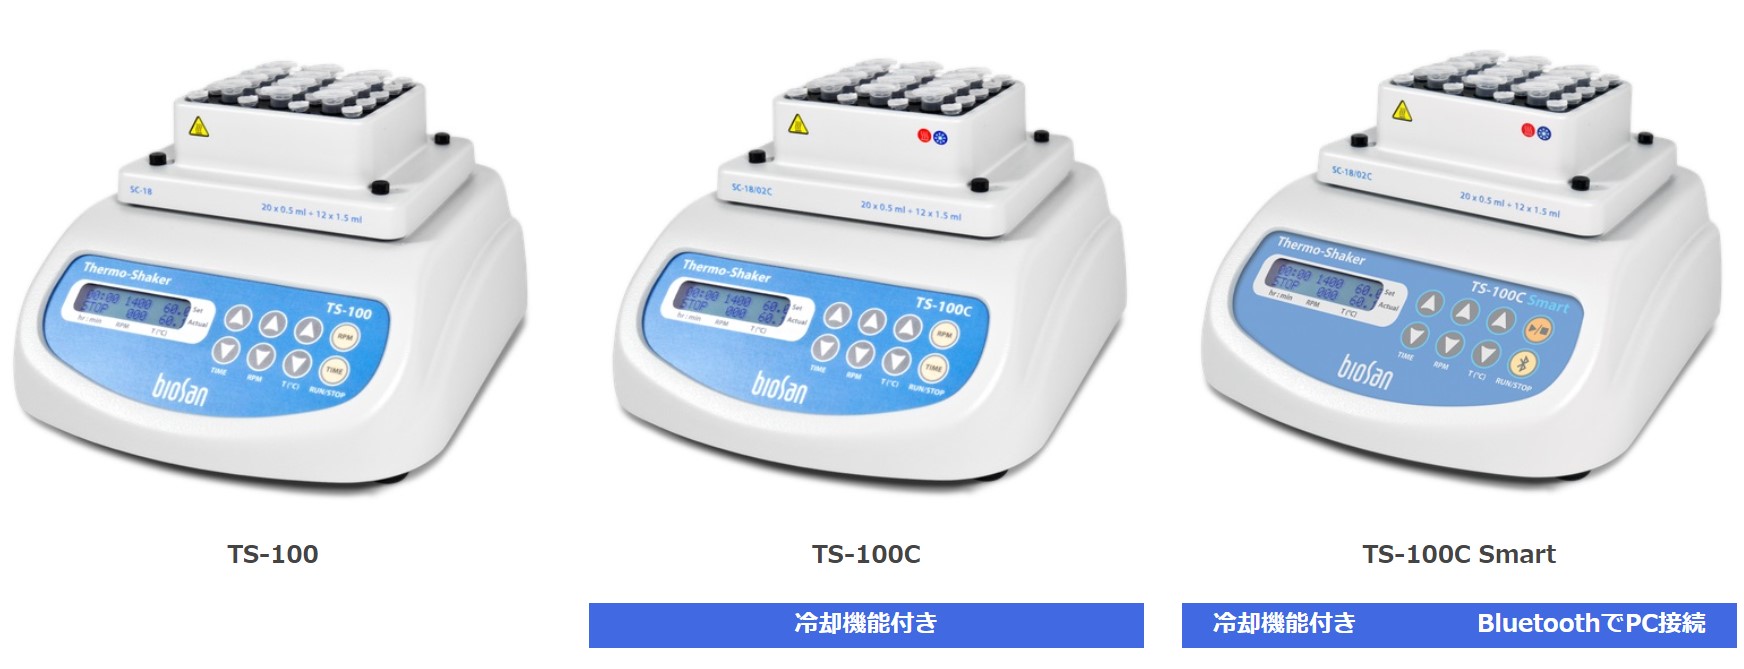 TS-100 / TS-100C / TS-100 Smart